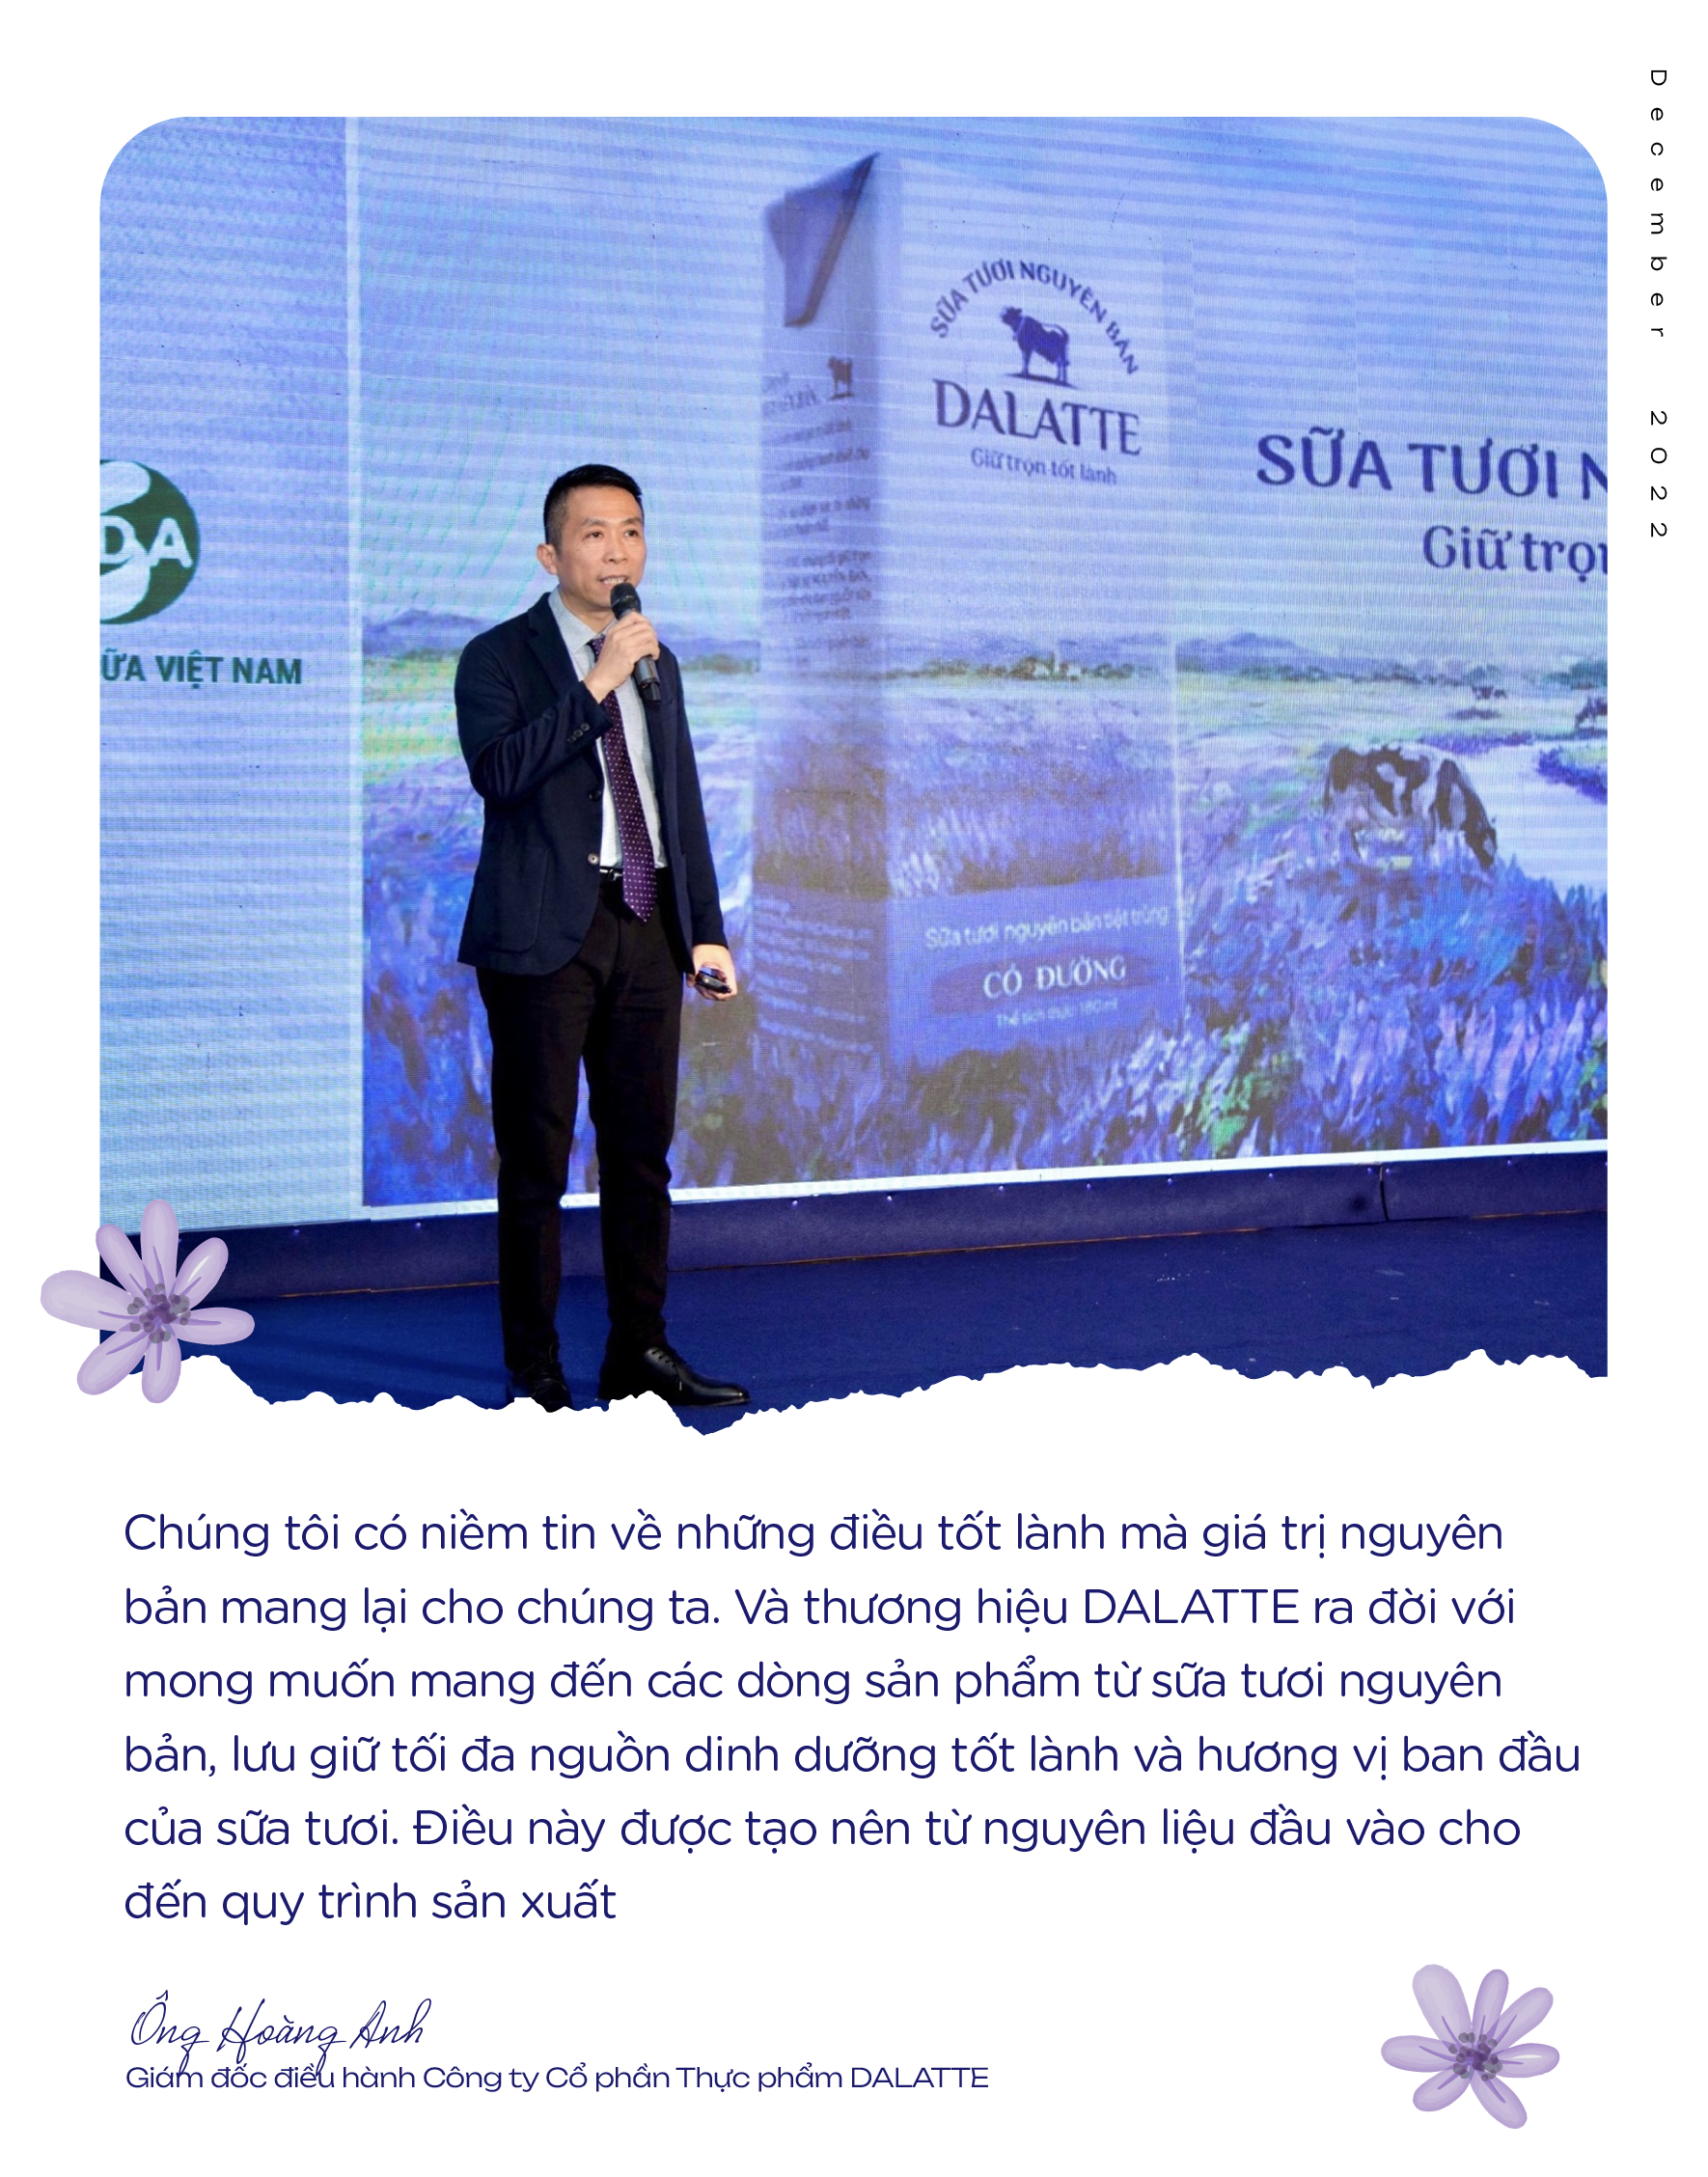 Lựa chọn sữa tươi nguyên bản trở thành xu hướng thời 4.0 của hàng loạt gia đình trẻ Việt - Ảnh 4.